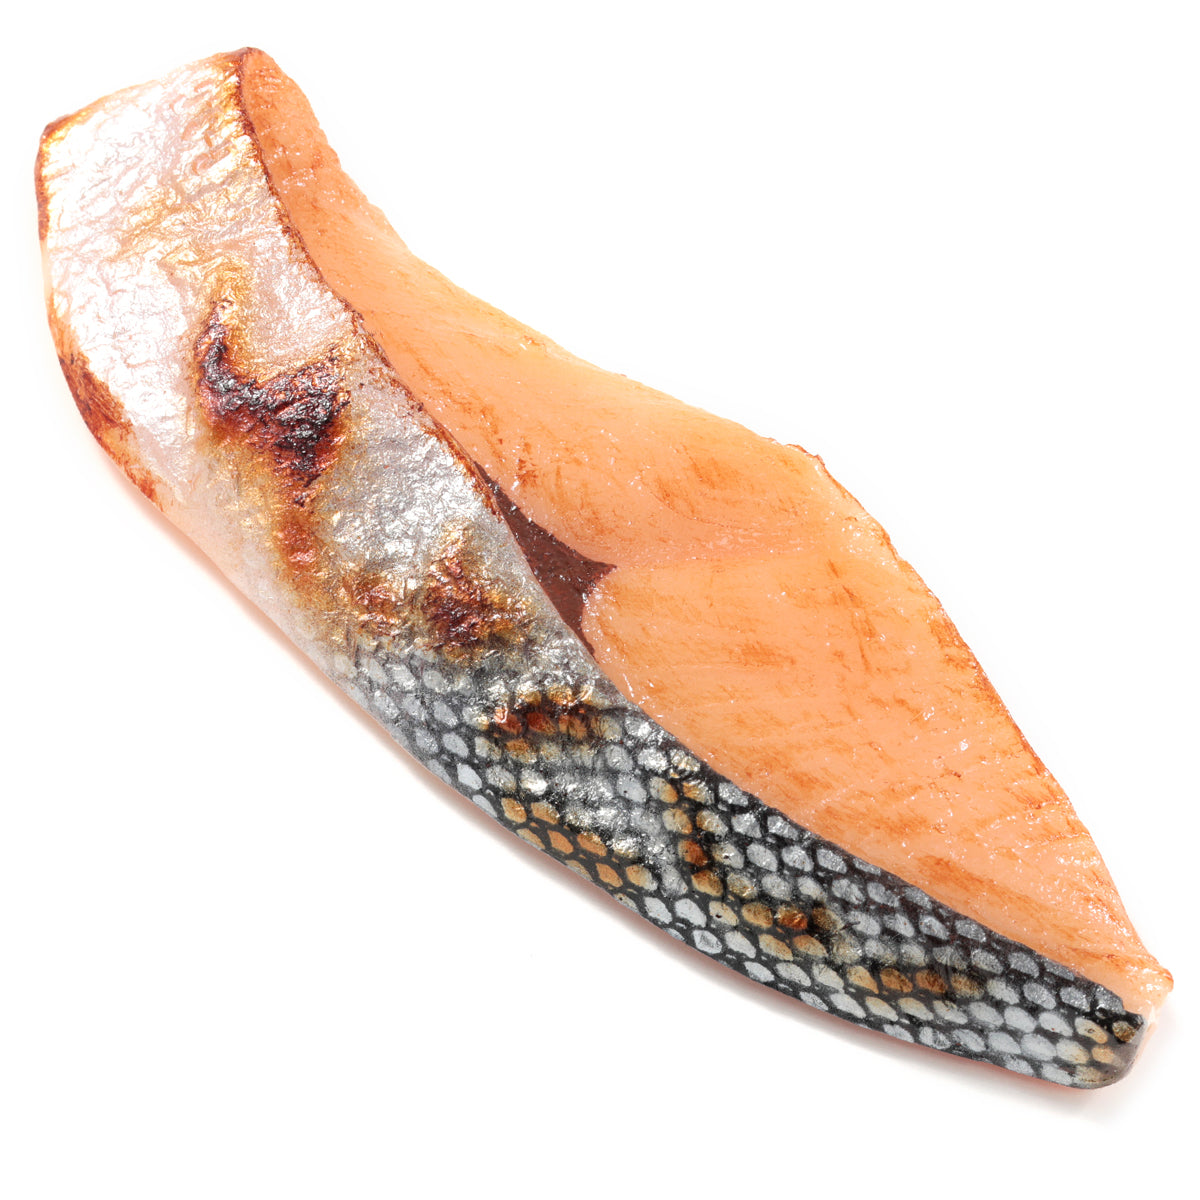 元祖食品サンプル屋「焼魚鮭(中)のマグネット」の商品画像です。